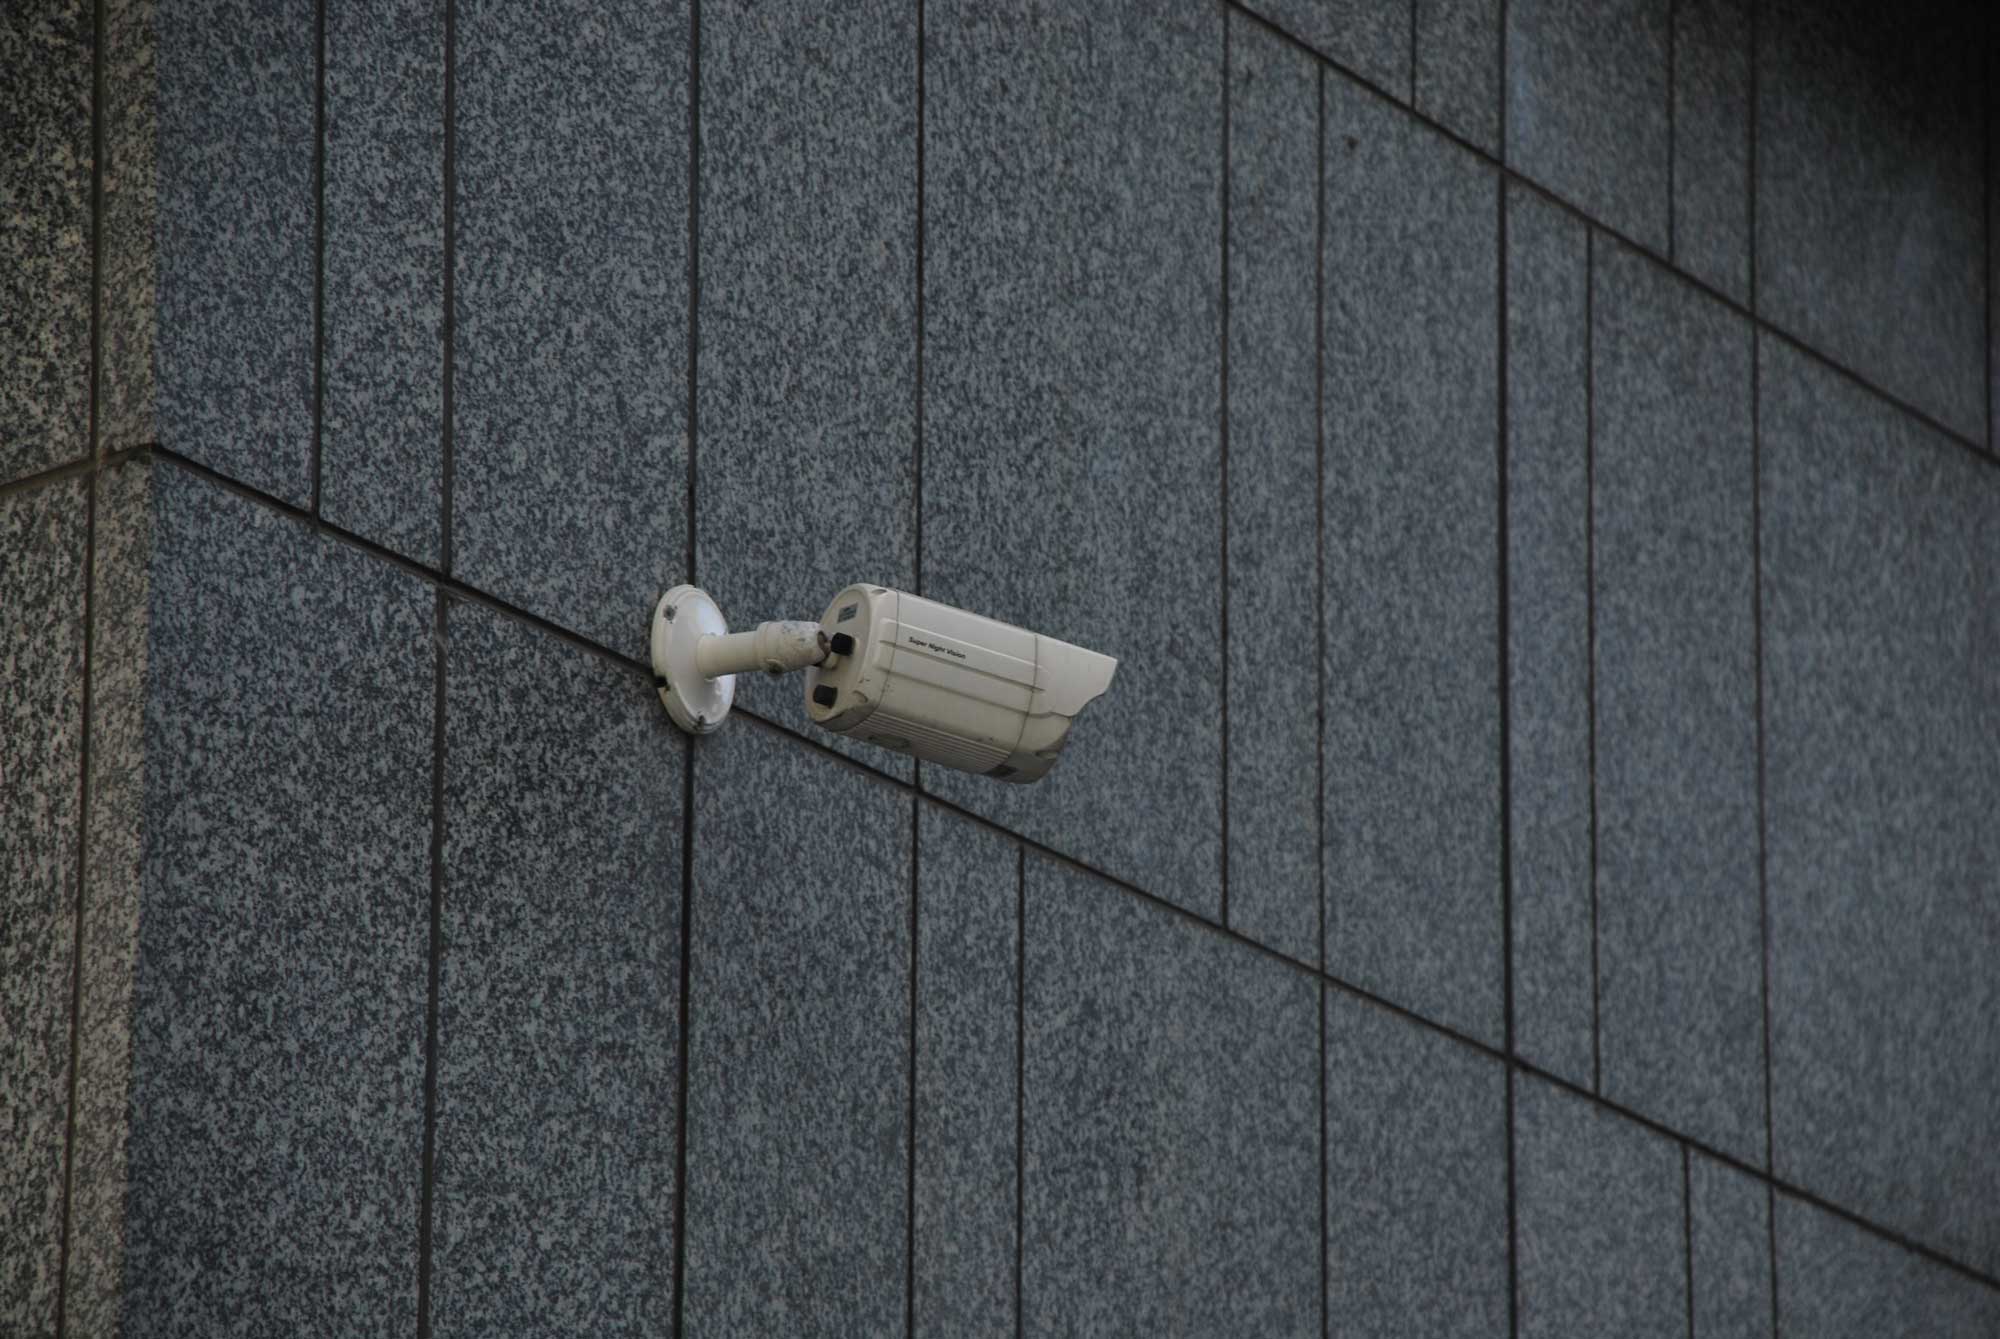 CCTV Sucurity